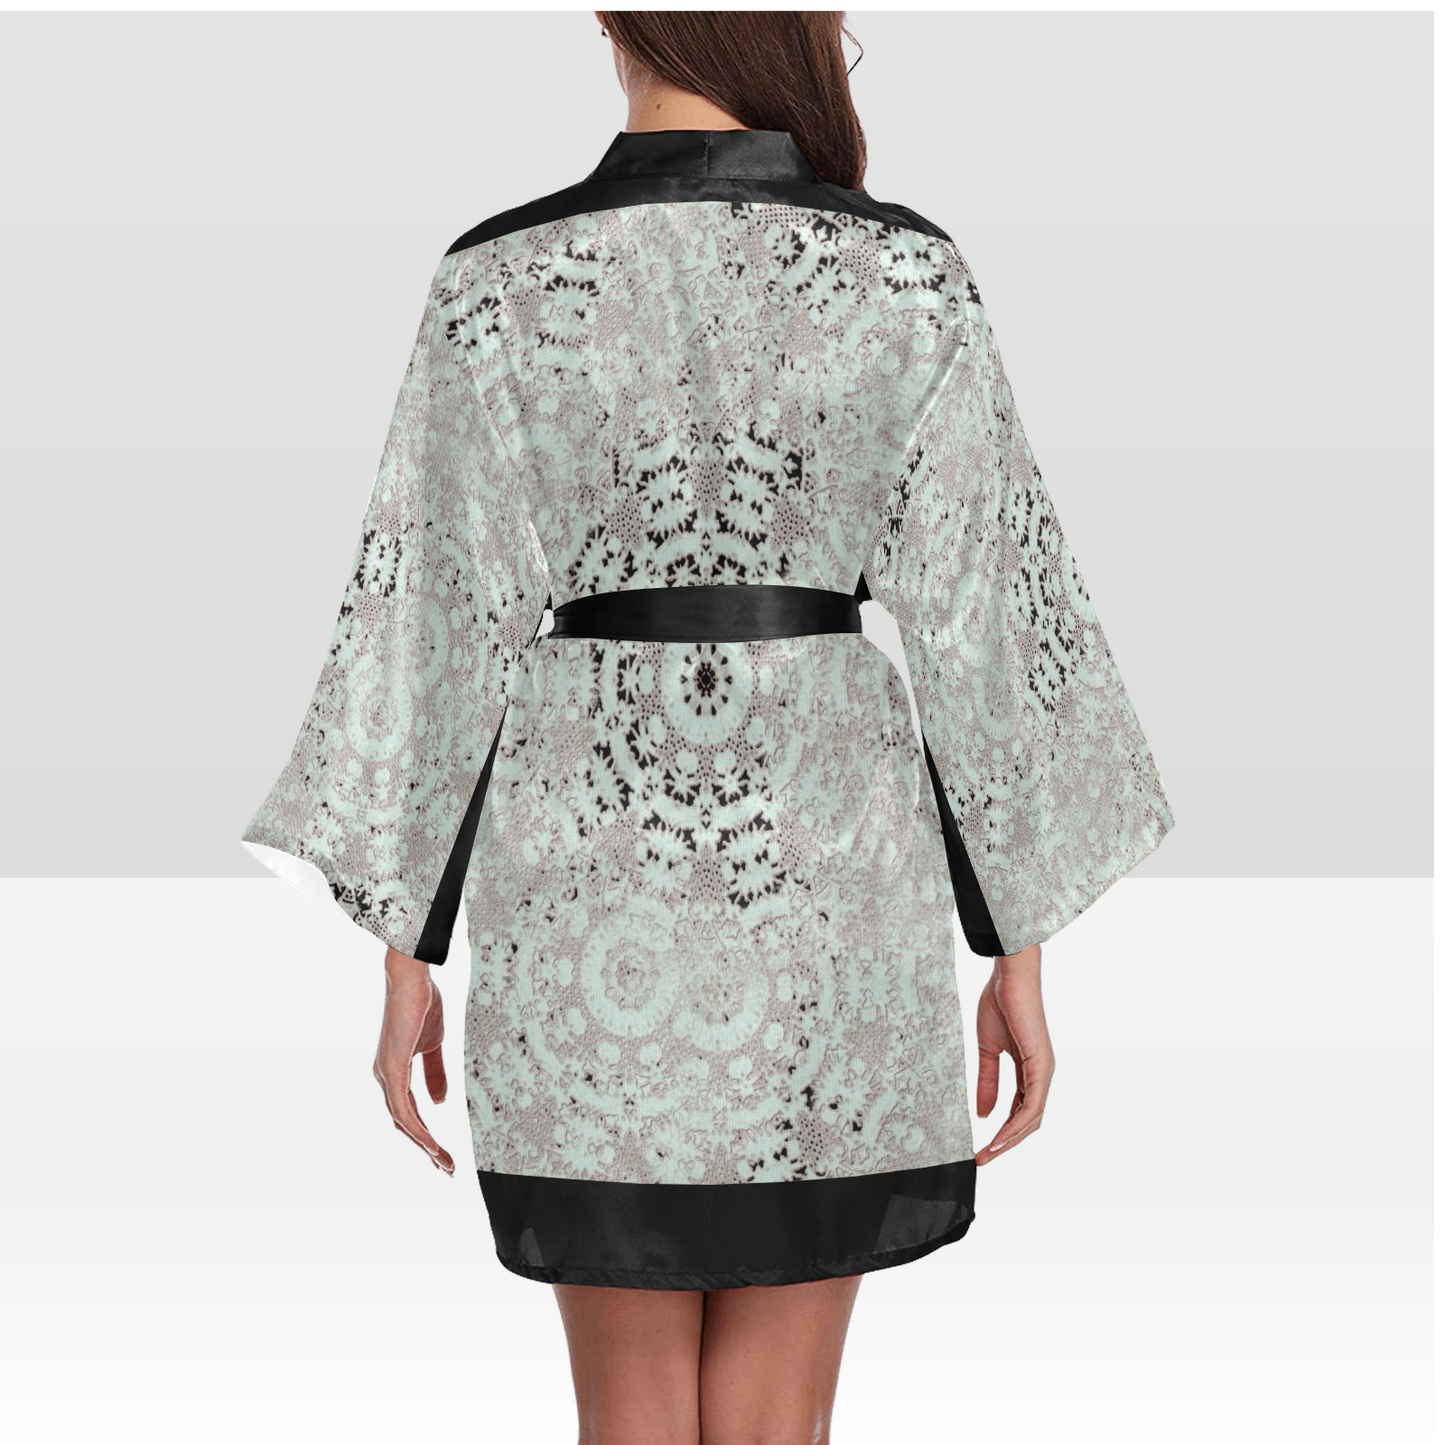 Victorian Lace Kimono Robe, Black or White Trim, Sizes XS to 2XL, Design 51